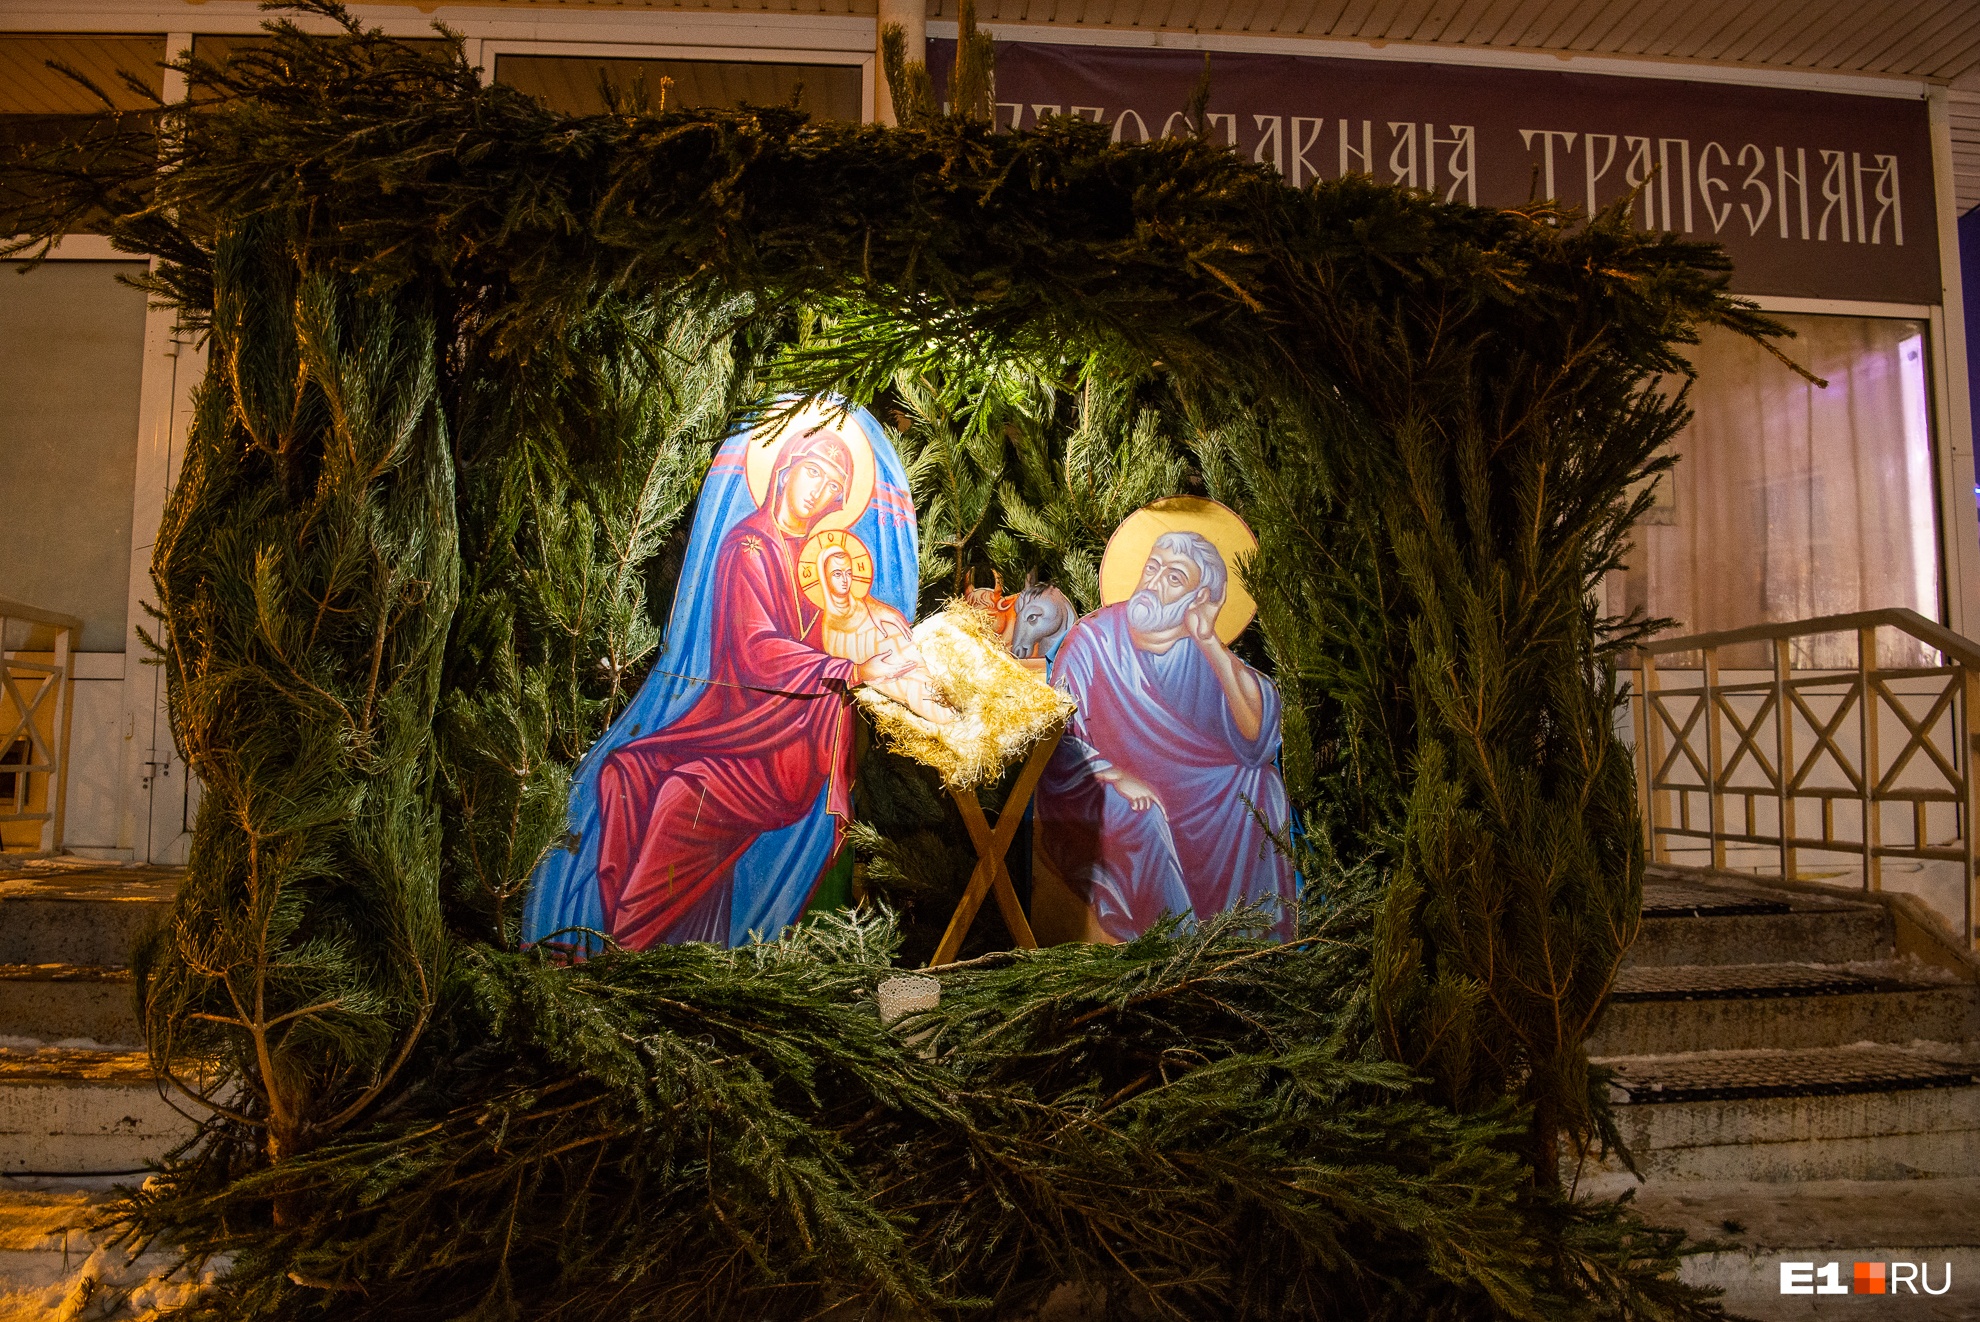 «Время, когда стоит задуматься о смысле жизни»: Екатеринбург встретил православное Рождество